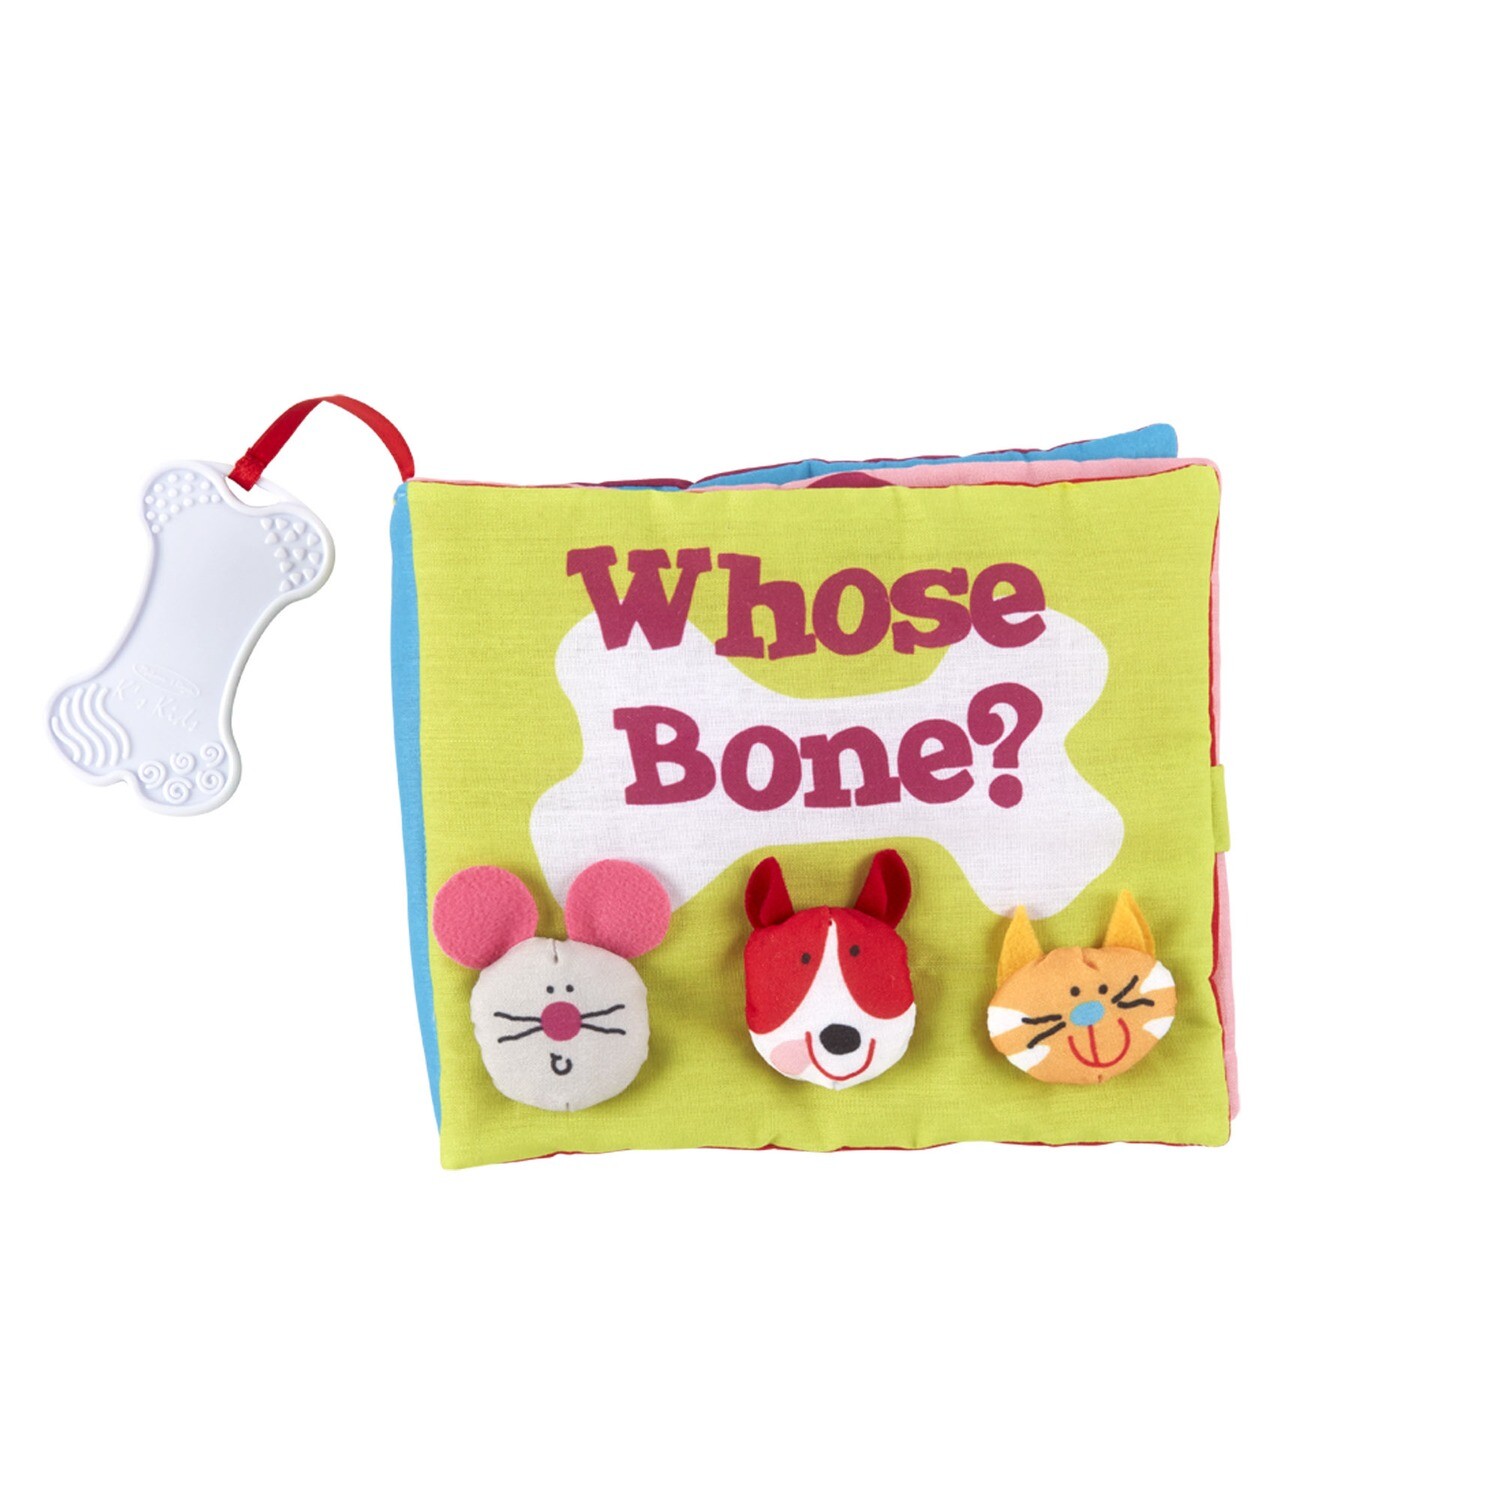 Whose Bone? cloth book